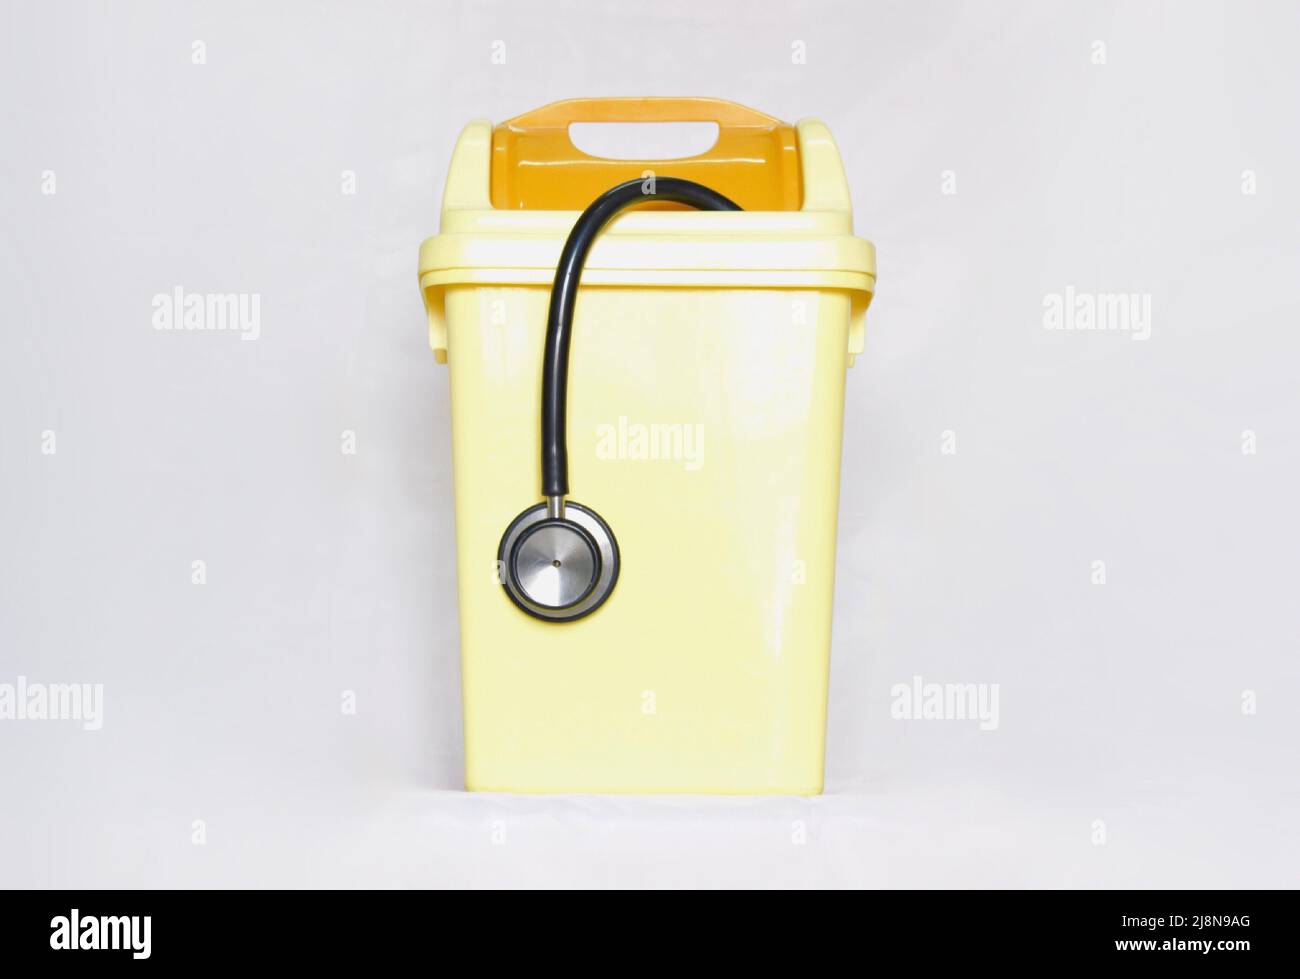 Schwarzes Stethoskop in kleinen gelben Kunststoff-Abfalleimer. Zeigt, beenden Sie den medizinischen Job, enttäuschen und aufgeben Ärzteberuf. Stockfoto